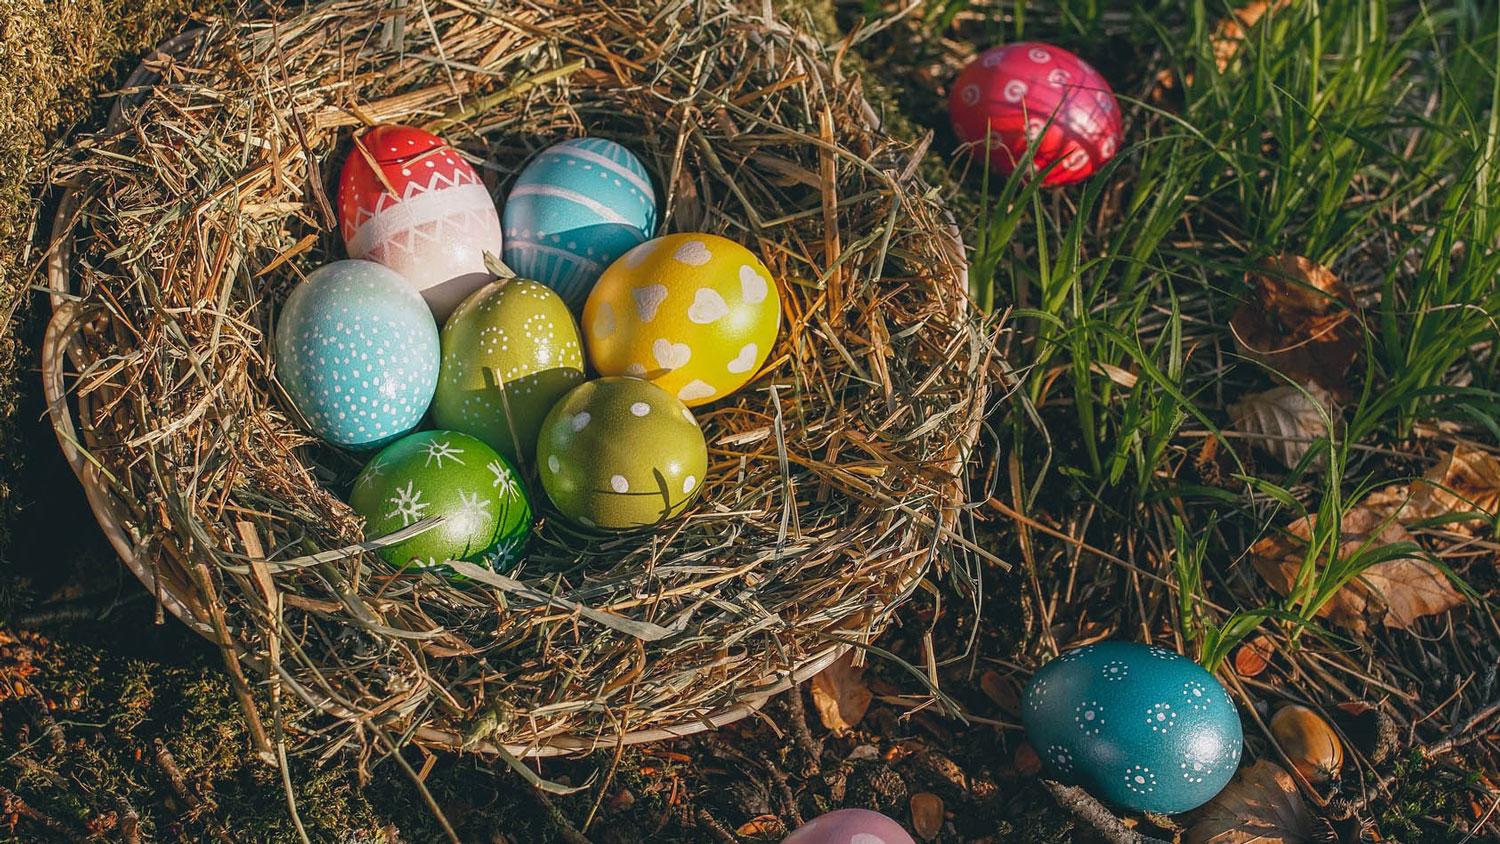 La tradición de los huevos y los conejos de Pascua –